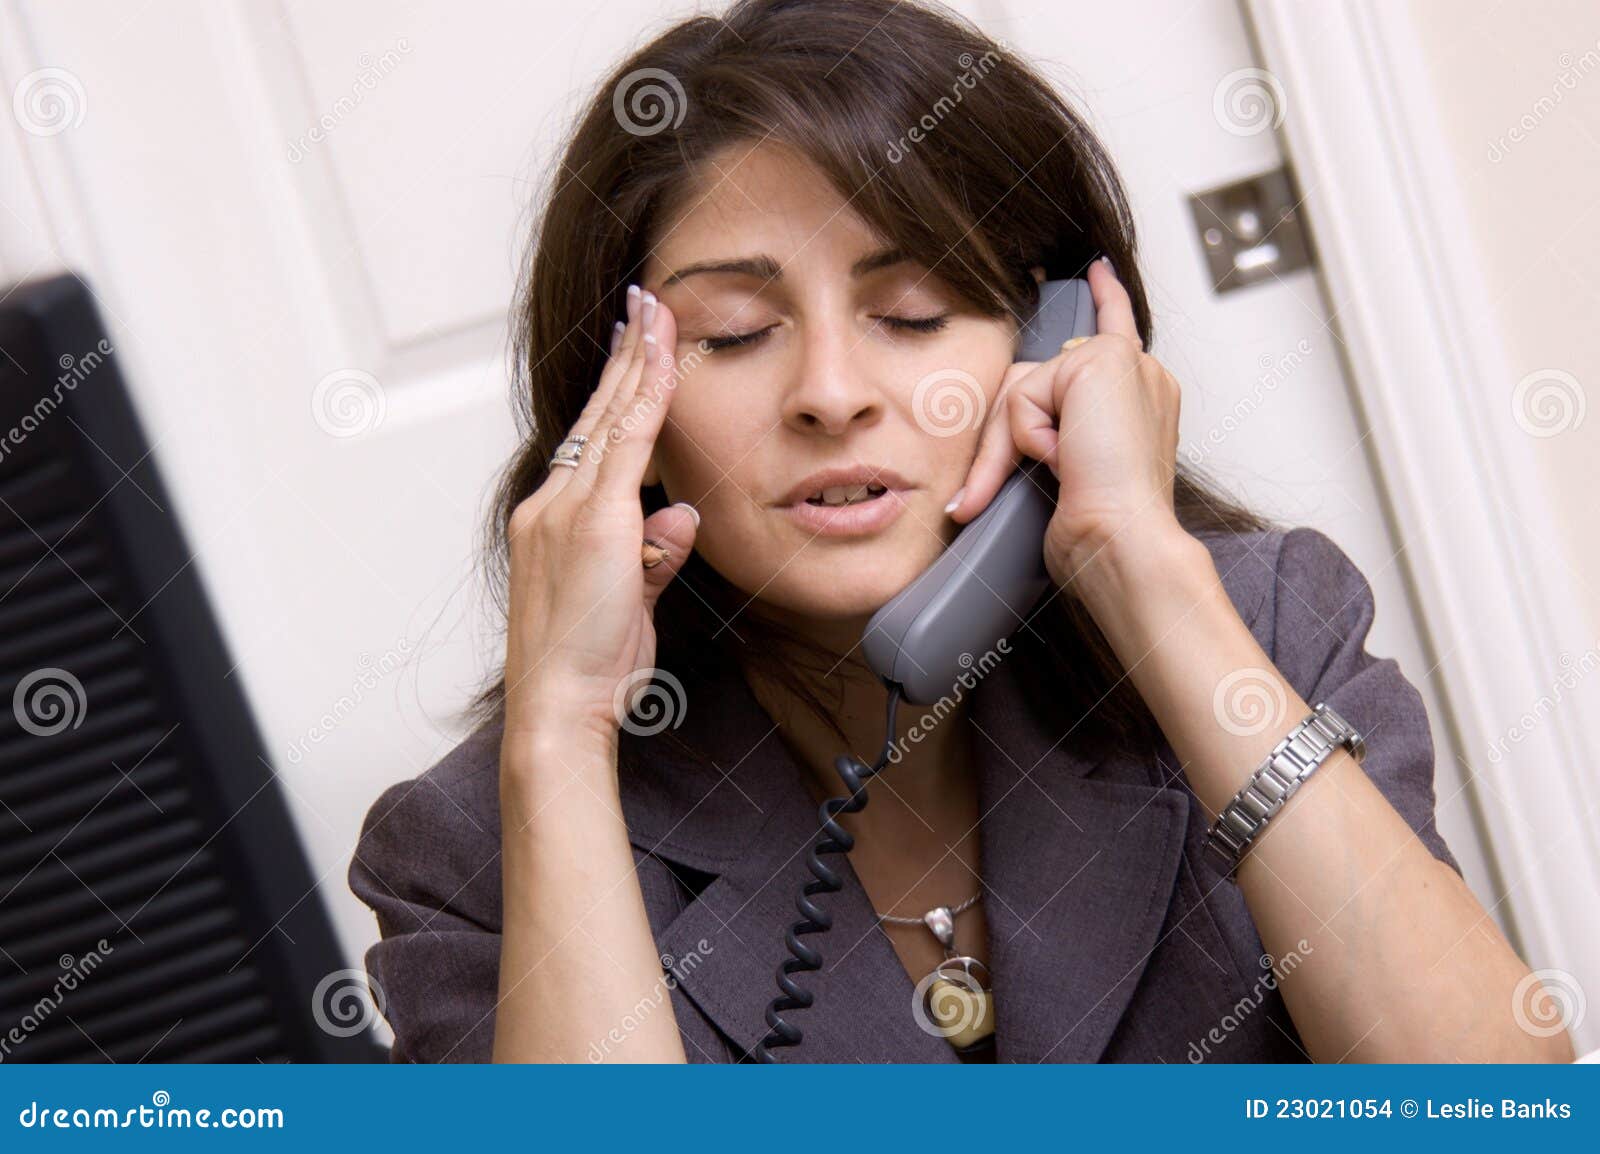 Мамка разговаривает по телефону. Женщина разговаривает по телефону. Девушка с телефонной трубкой. Человек с домашним телефоном. Недовольная девушка с телефоном.